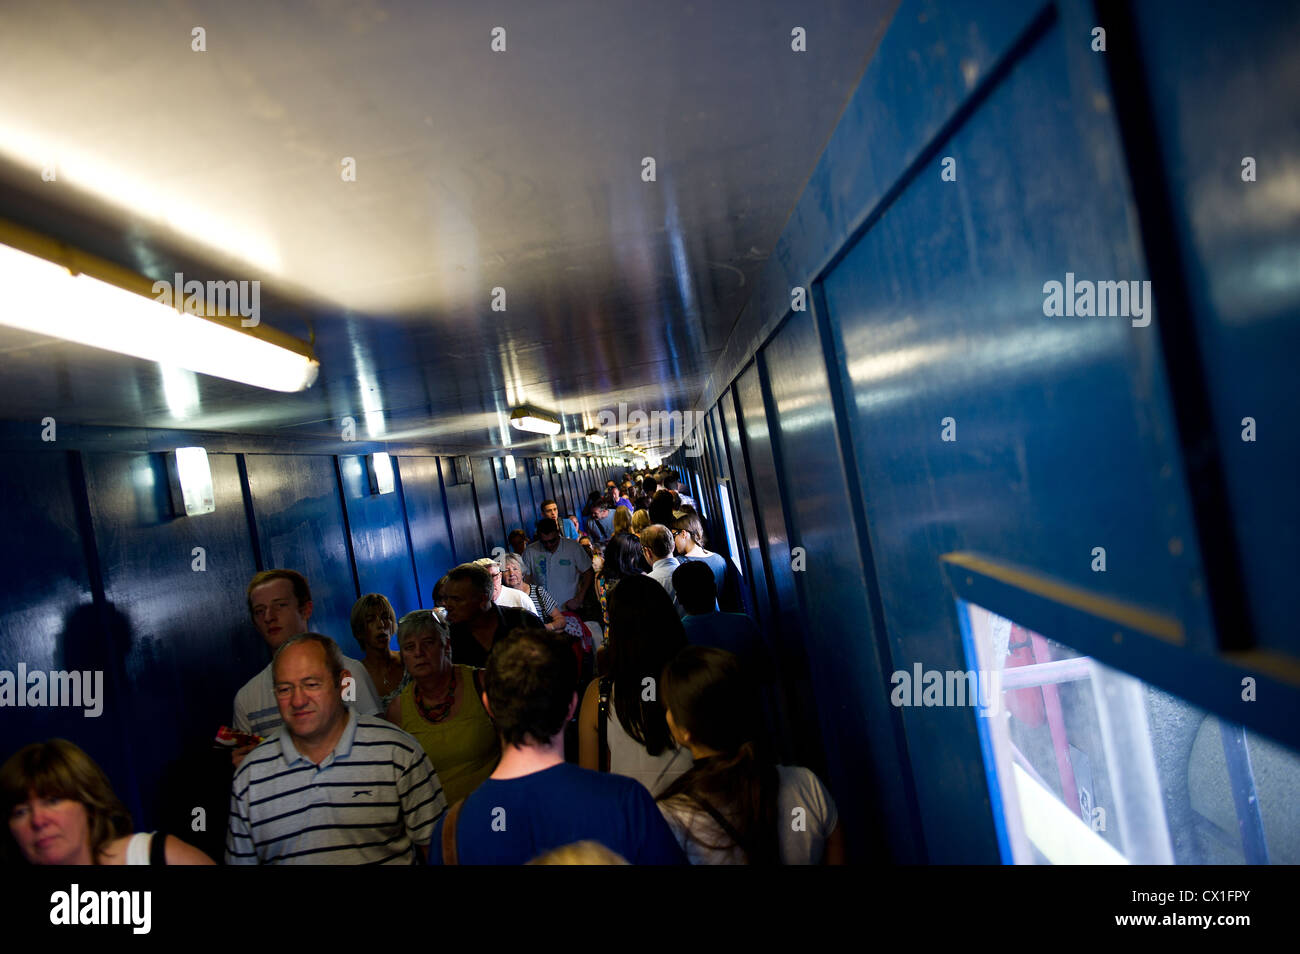 A crowded passageway Stock Photo